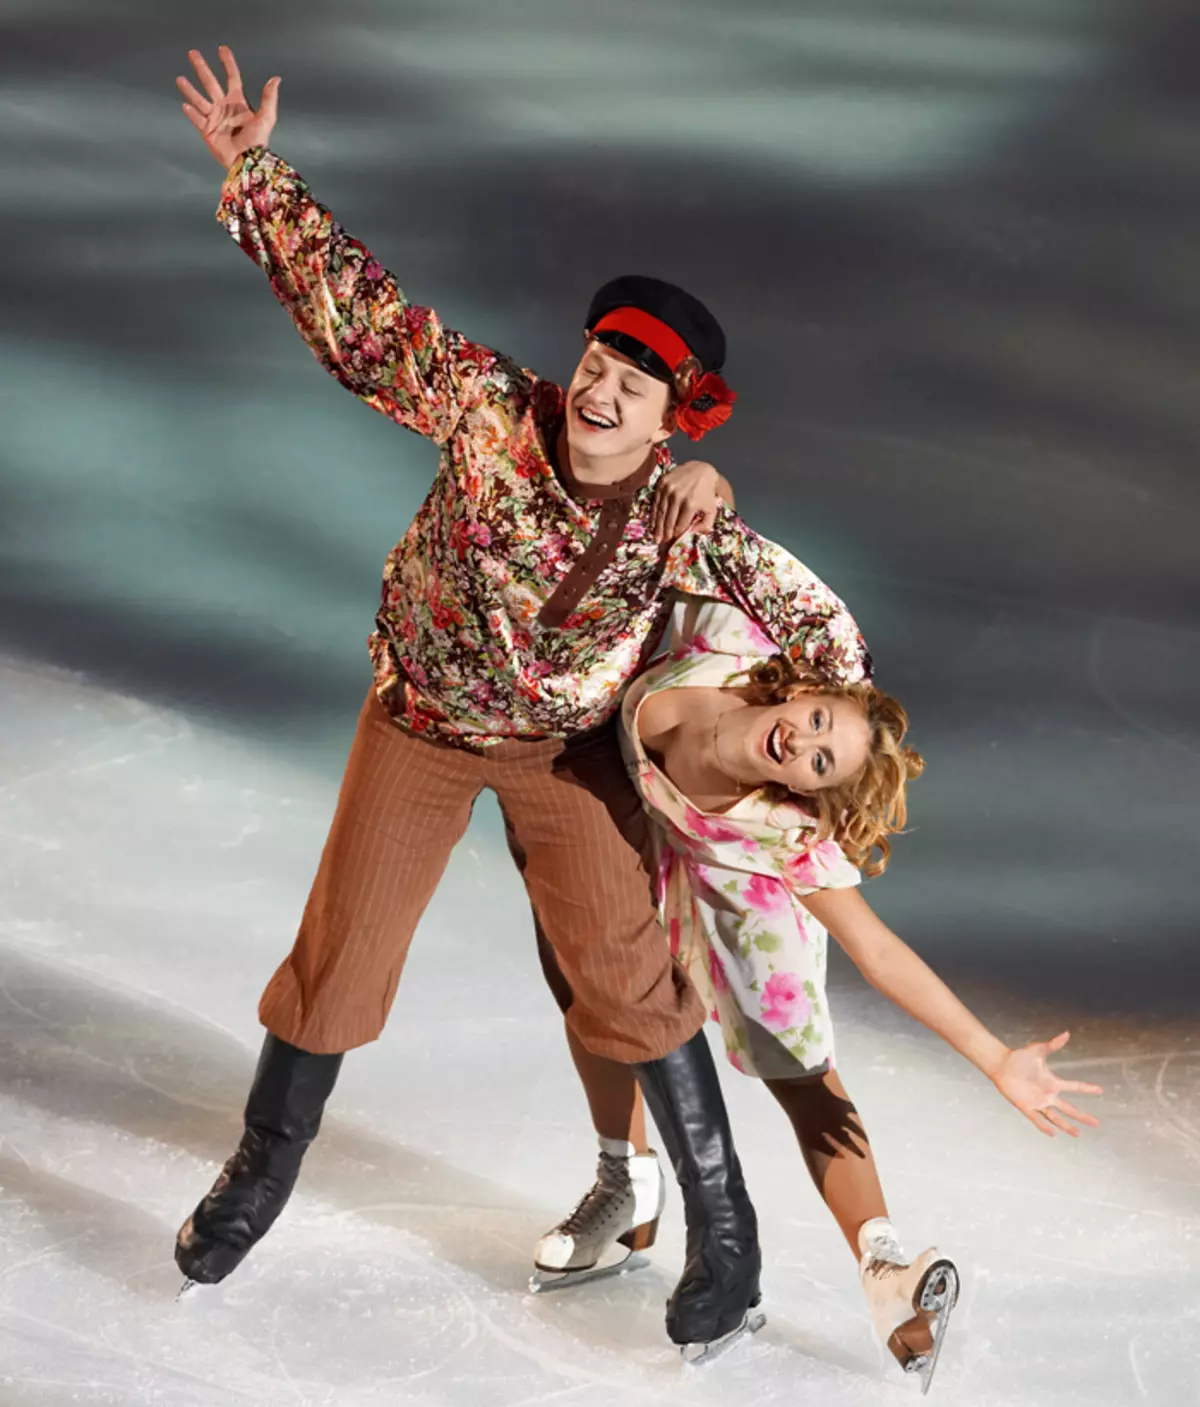 اجرای روشن مارات در نمایش یخ با تاتیانا ناکا توجه کل کشور را جلب کرد